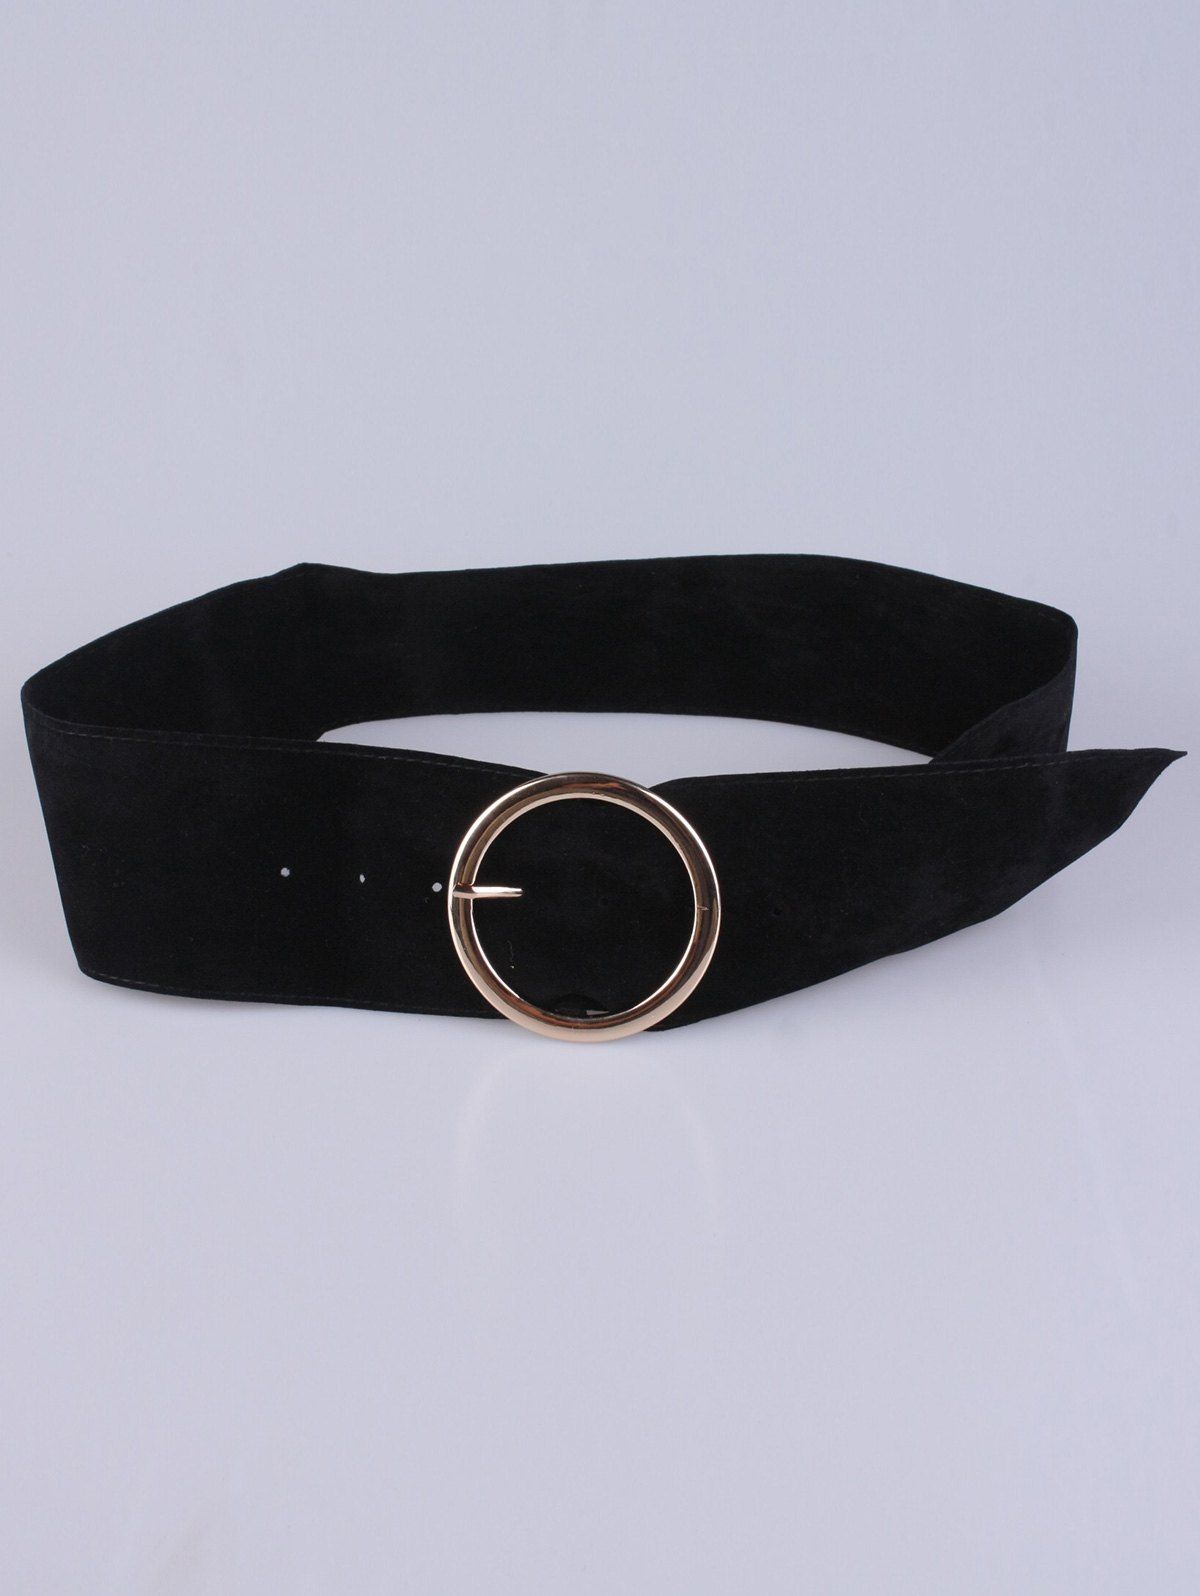 Coat Wear Hollow Ring Velvet Belt - BLACK 